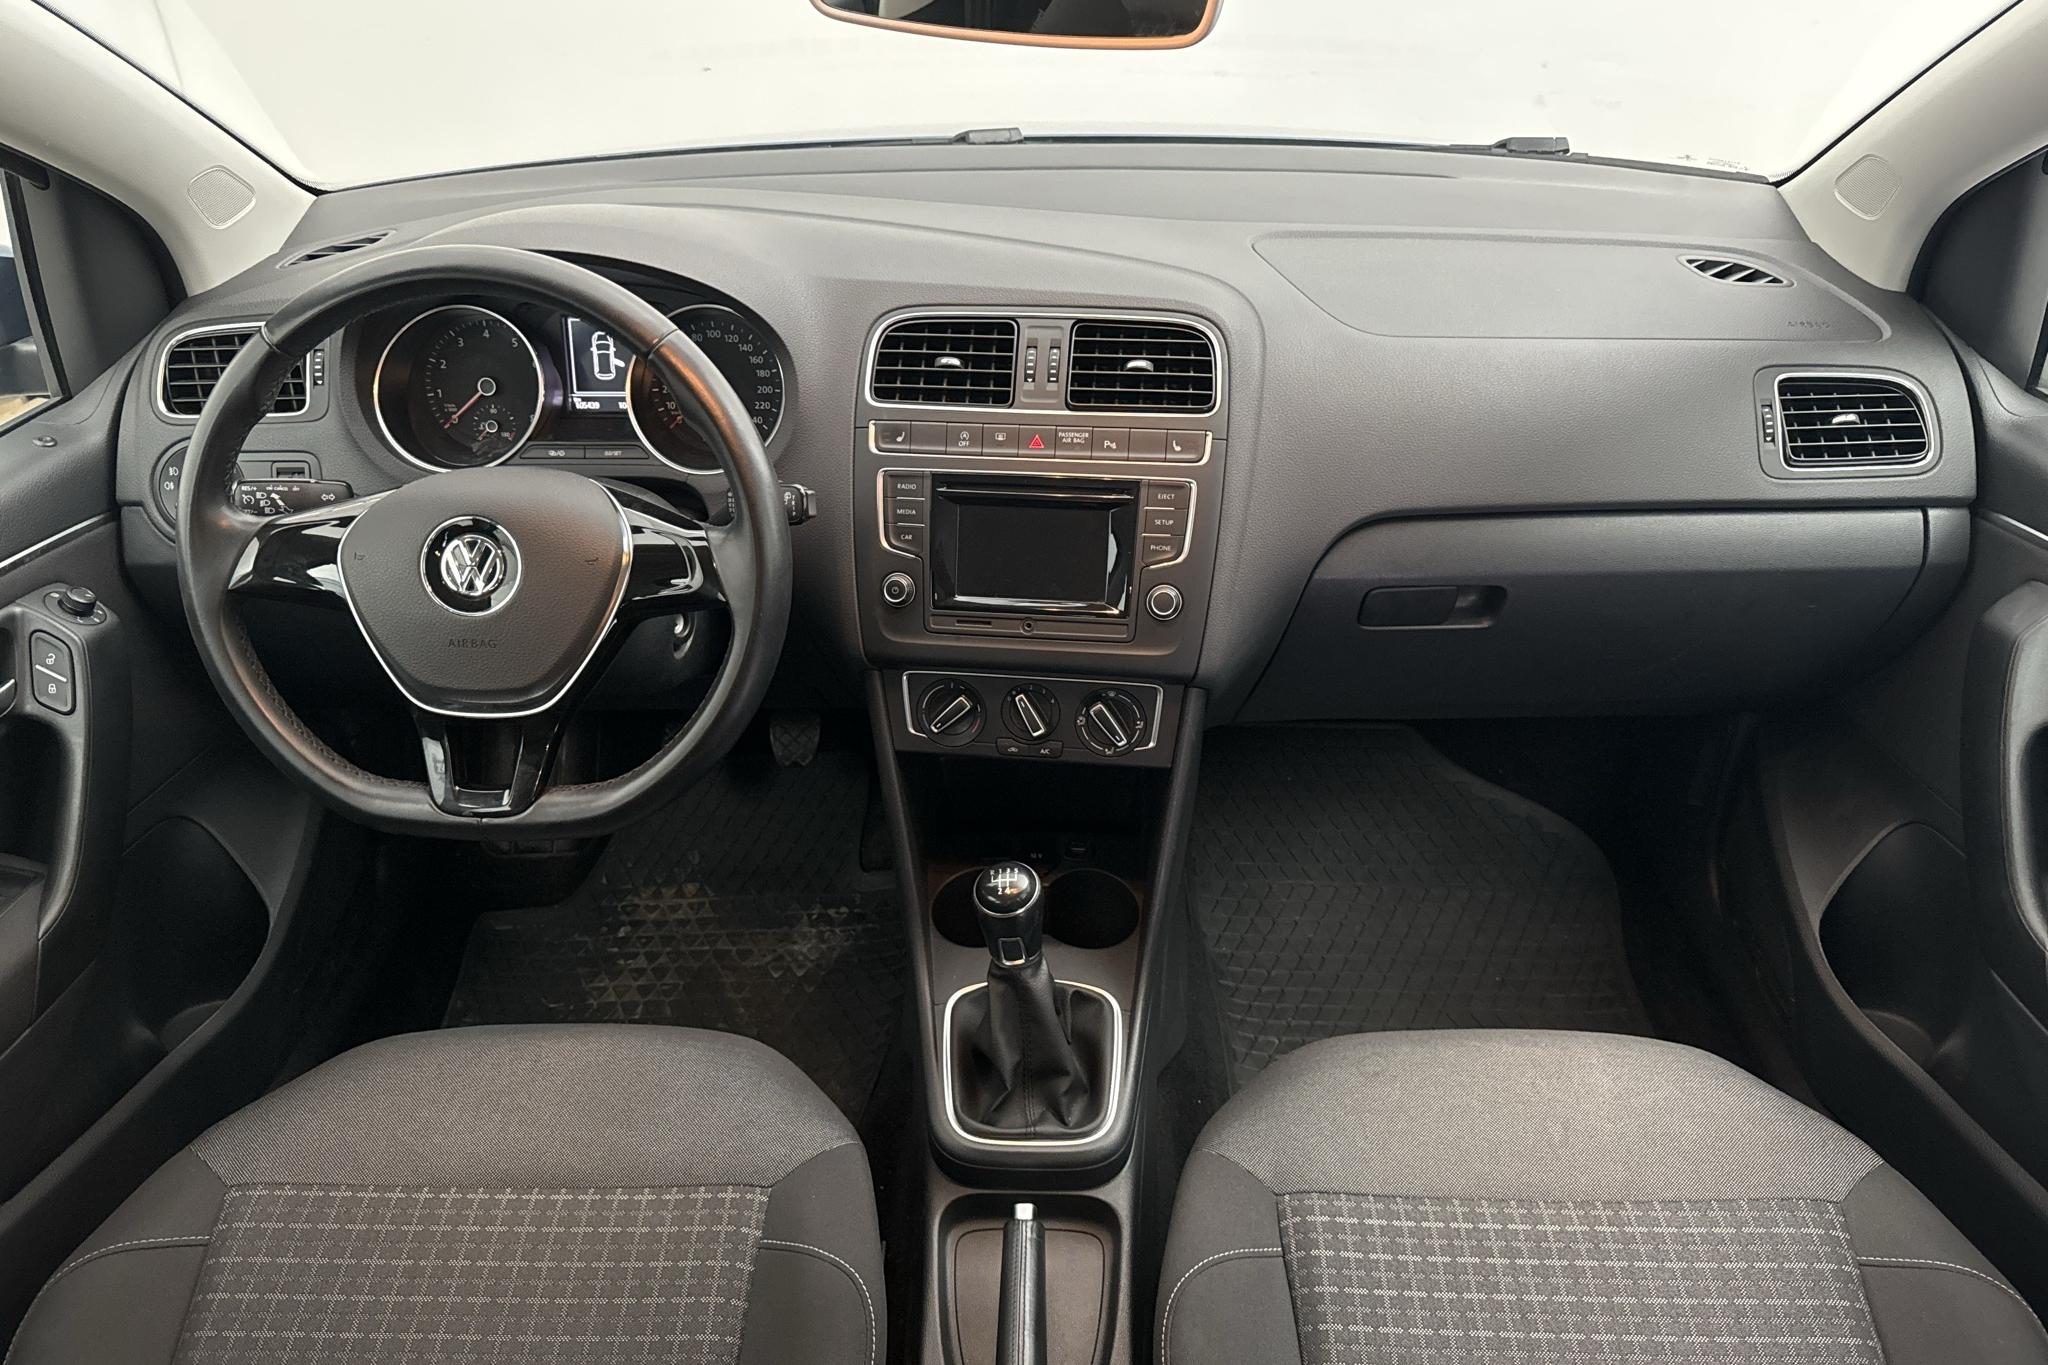 VW Polo 1.2 TSI 5dr (90hk) - 105 440 km - Manual - blue - 2015